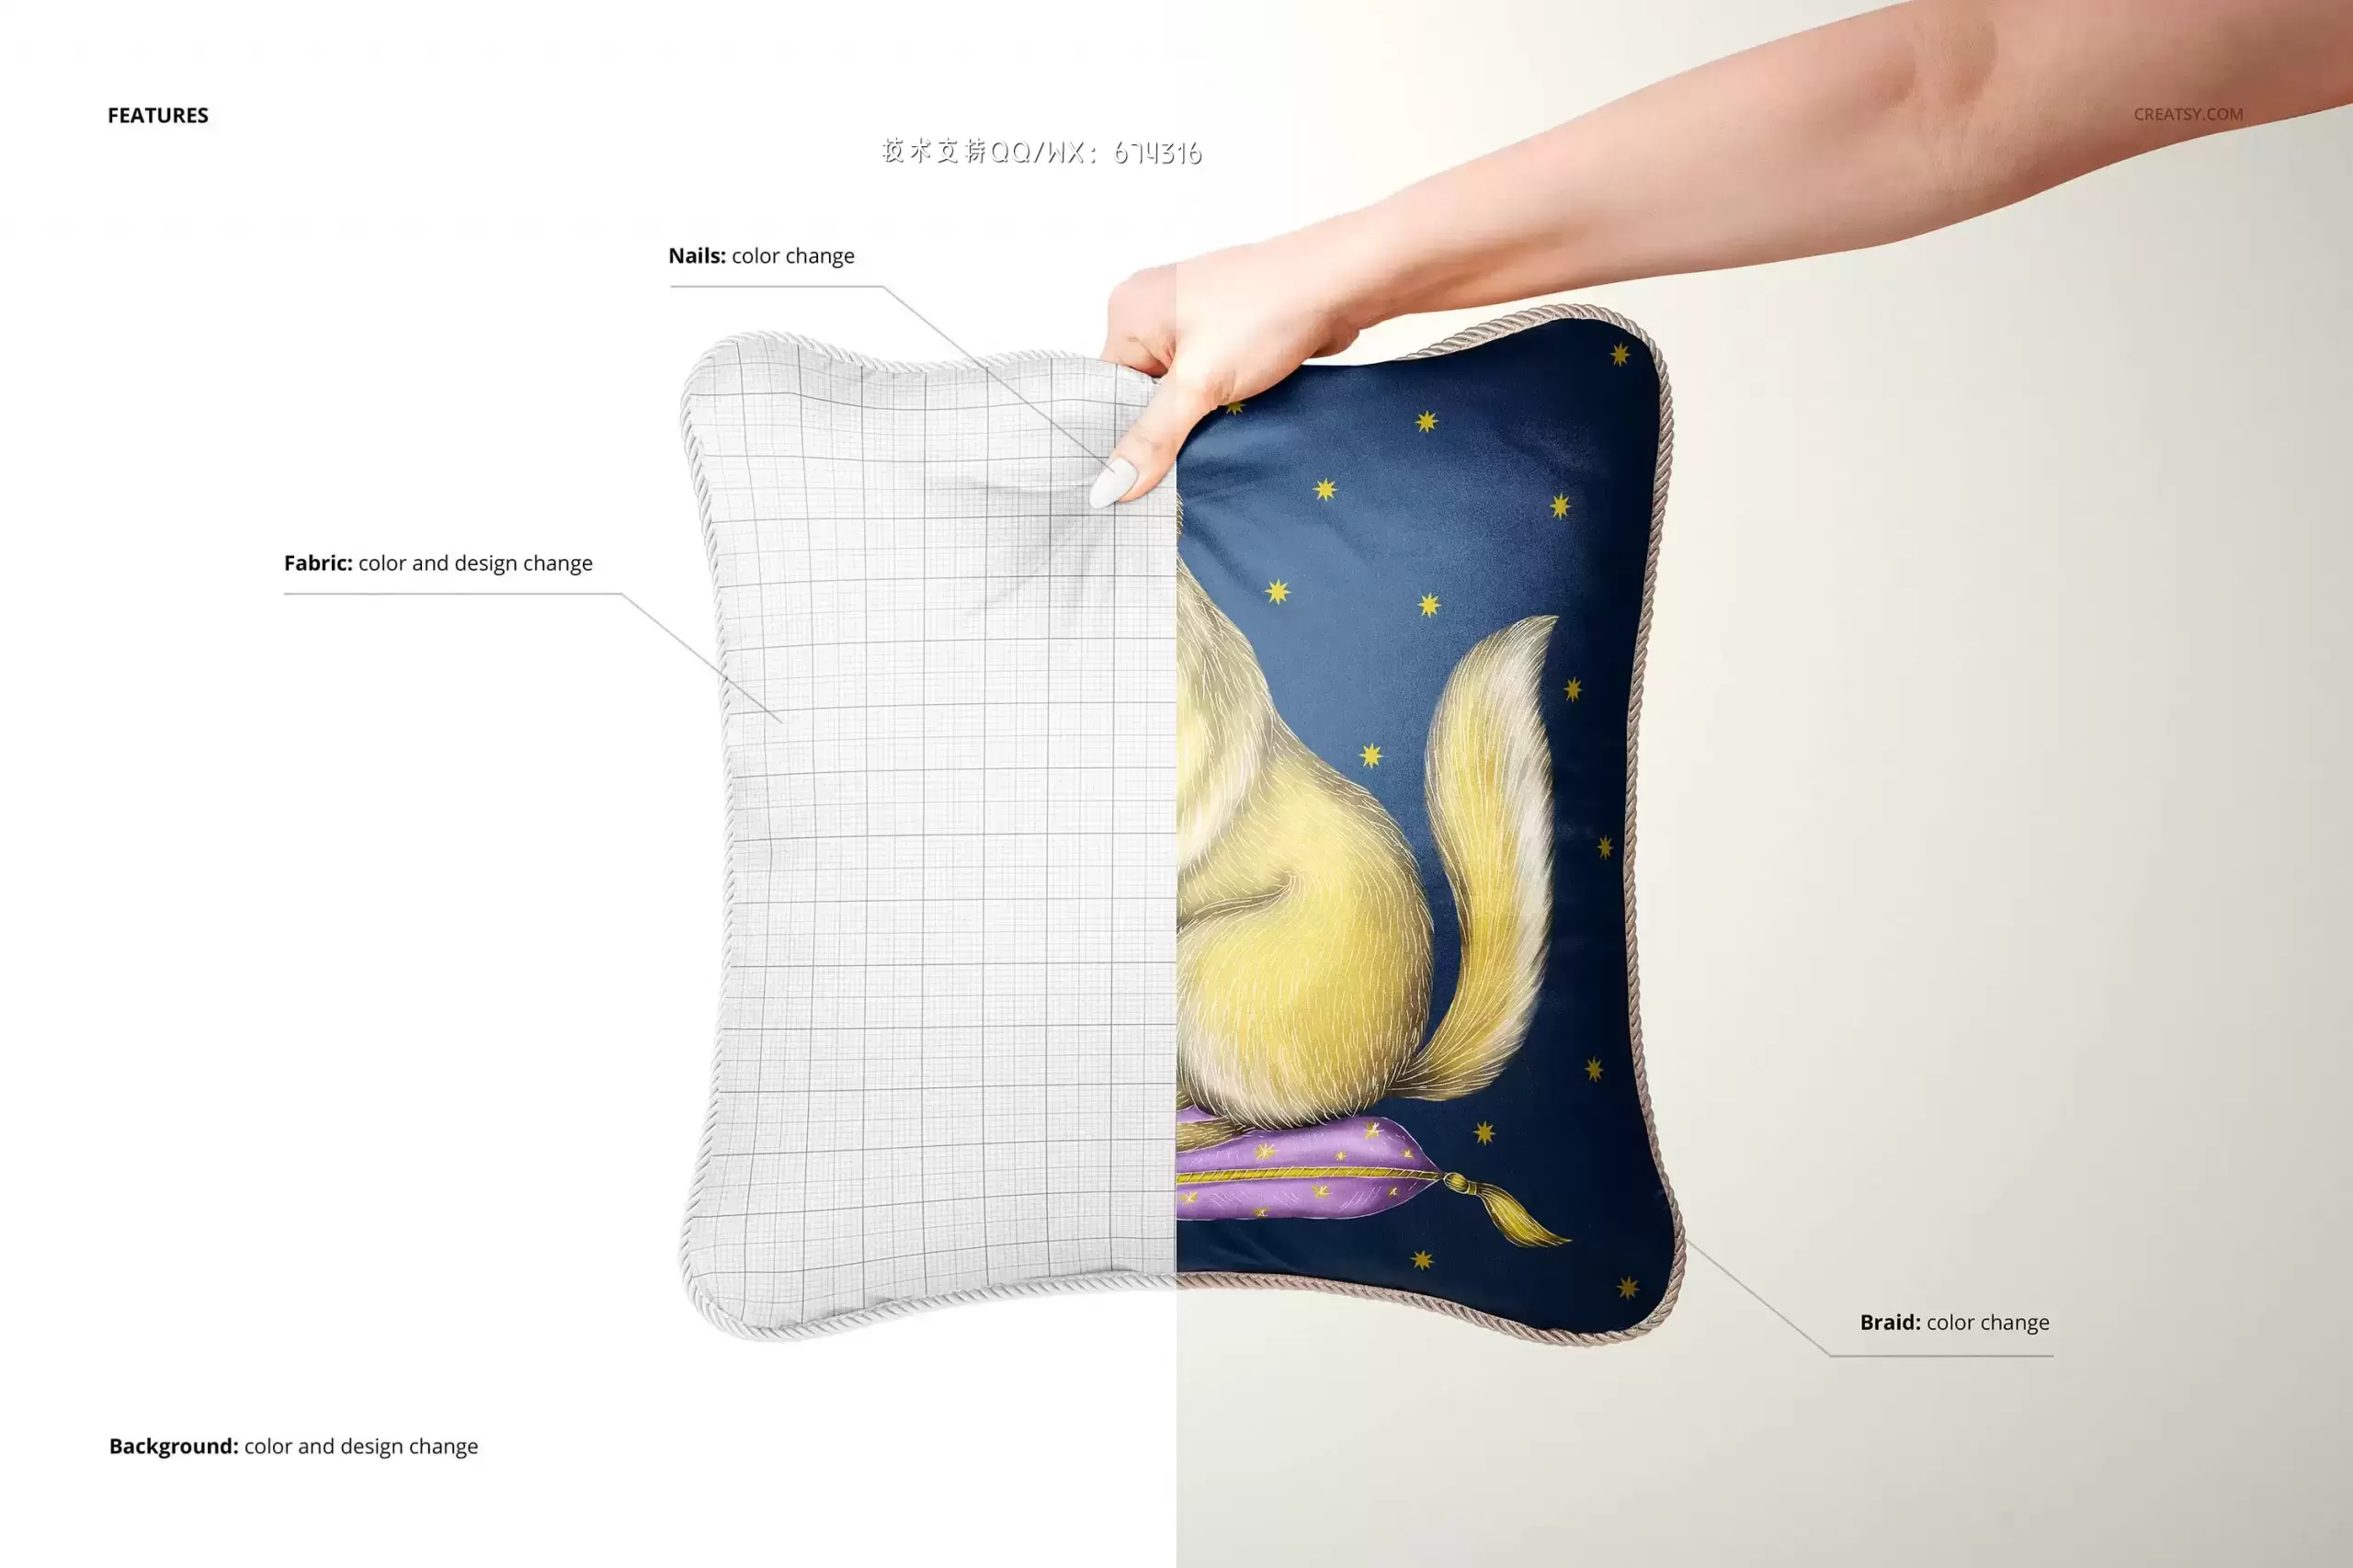 真丝编织套垫图案设计枕头样机[3.98GB,PSD]免费下载插图15